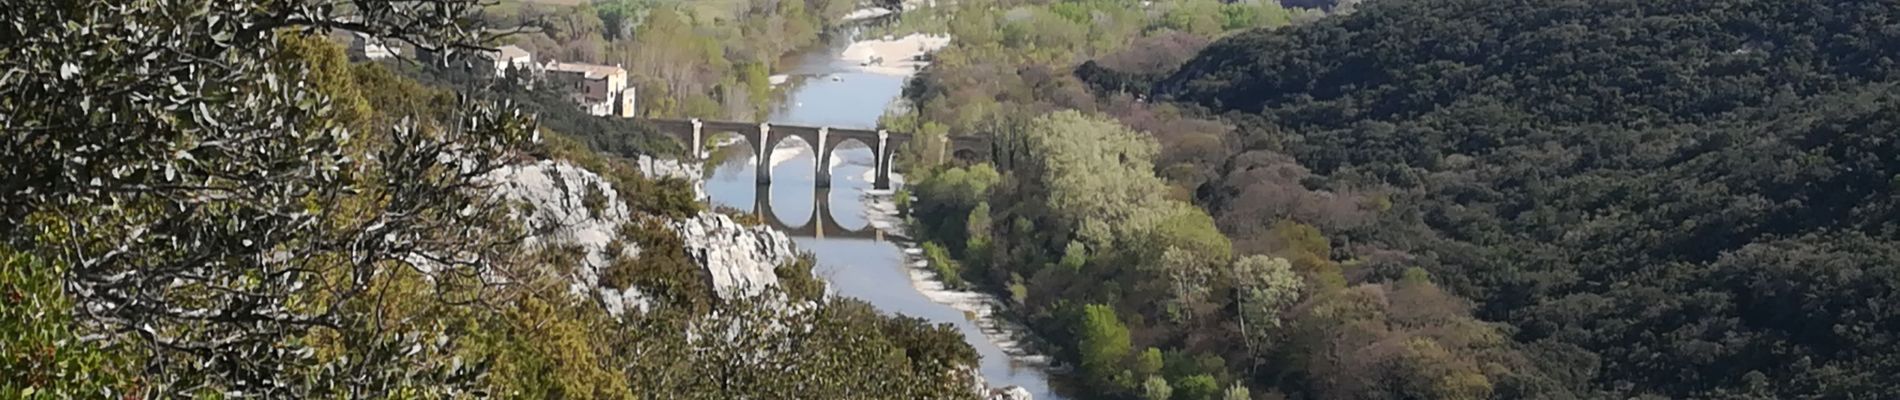 Randonnée Marche Sainte-Anastasie - les gorges du gardon le 02 avril 2021 - Photo